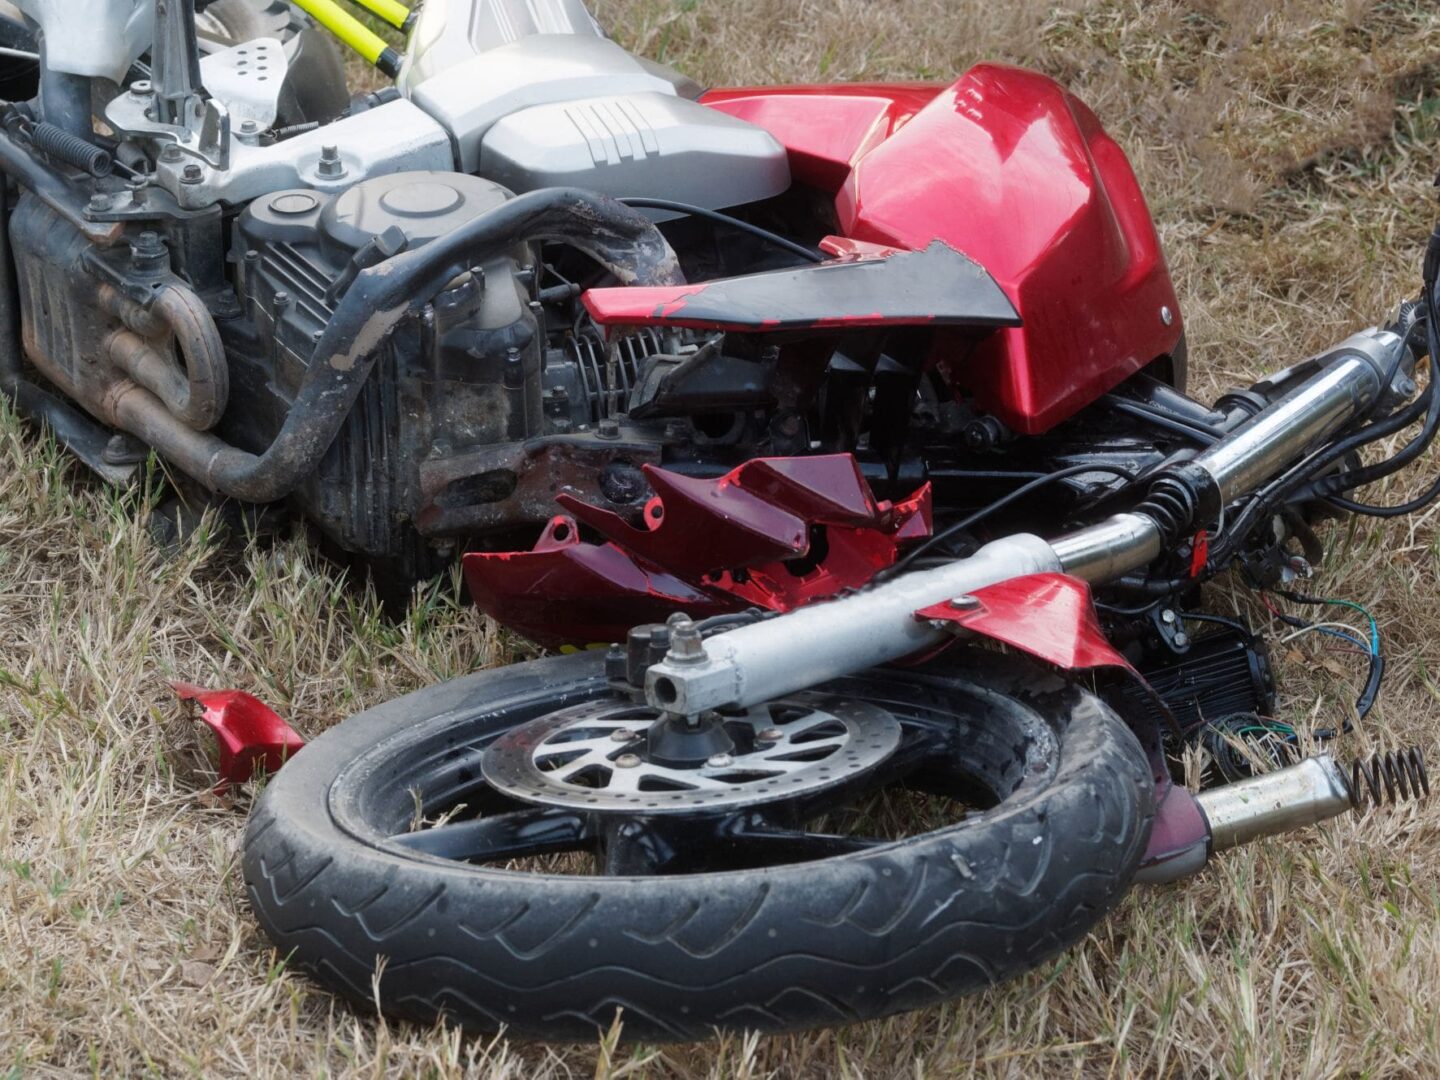 Motorcycle Accident Attorneys Colorado Springs